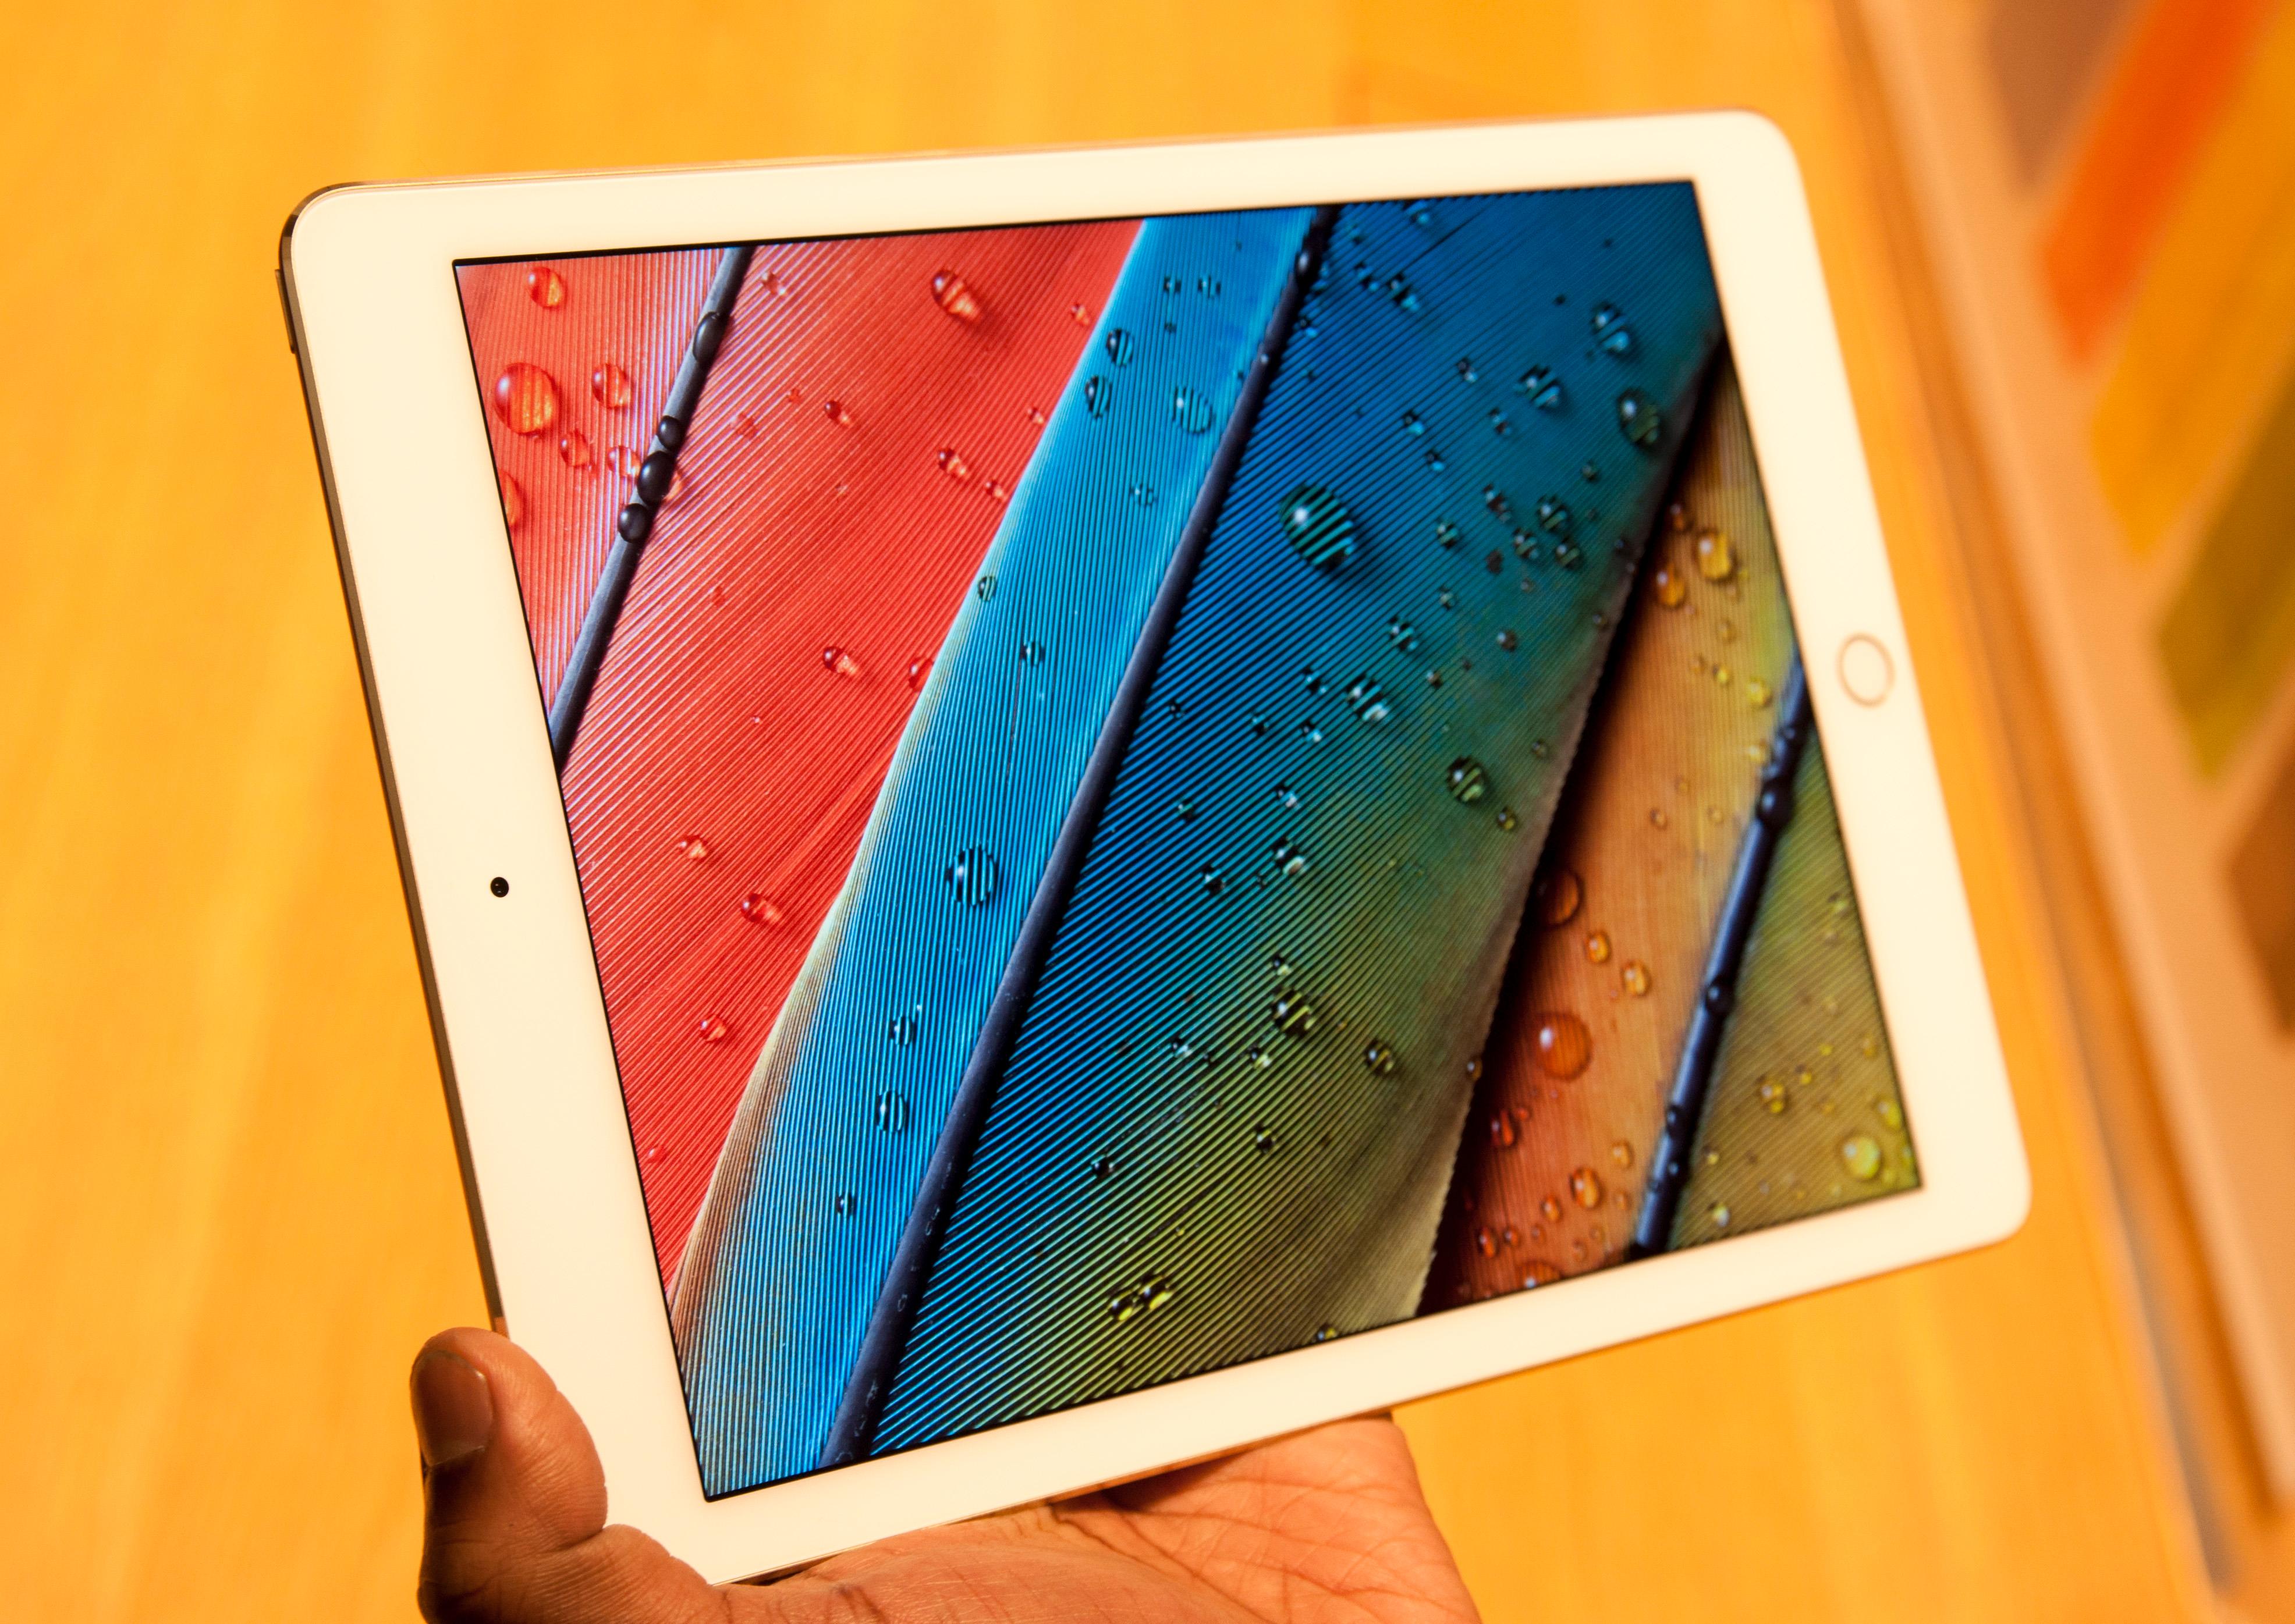 Bildekvaliteten i den nye iPad Air 2-skjermen opplever vi som meget god. Den virker til tider nesten matt, samtidig som den stadig er sylskarp og har god fargegjengivelse.Foto: Finn Jarle Kvalheim, Tek.no